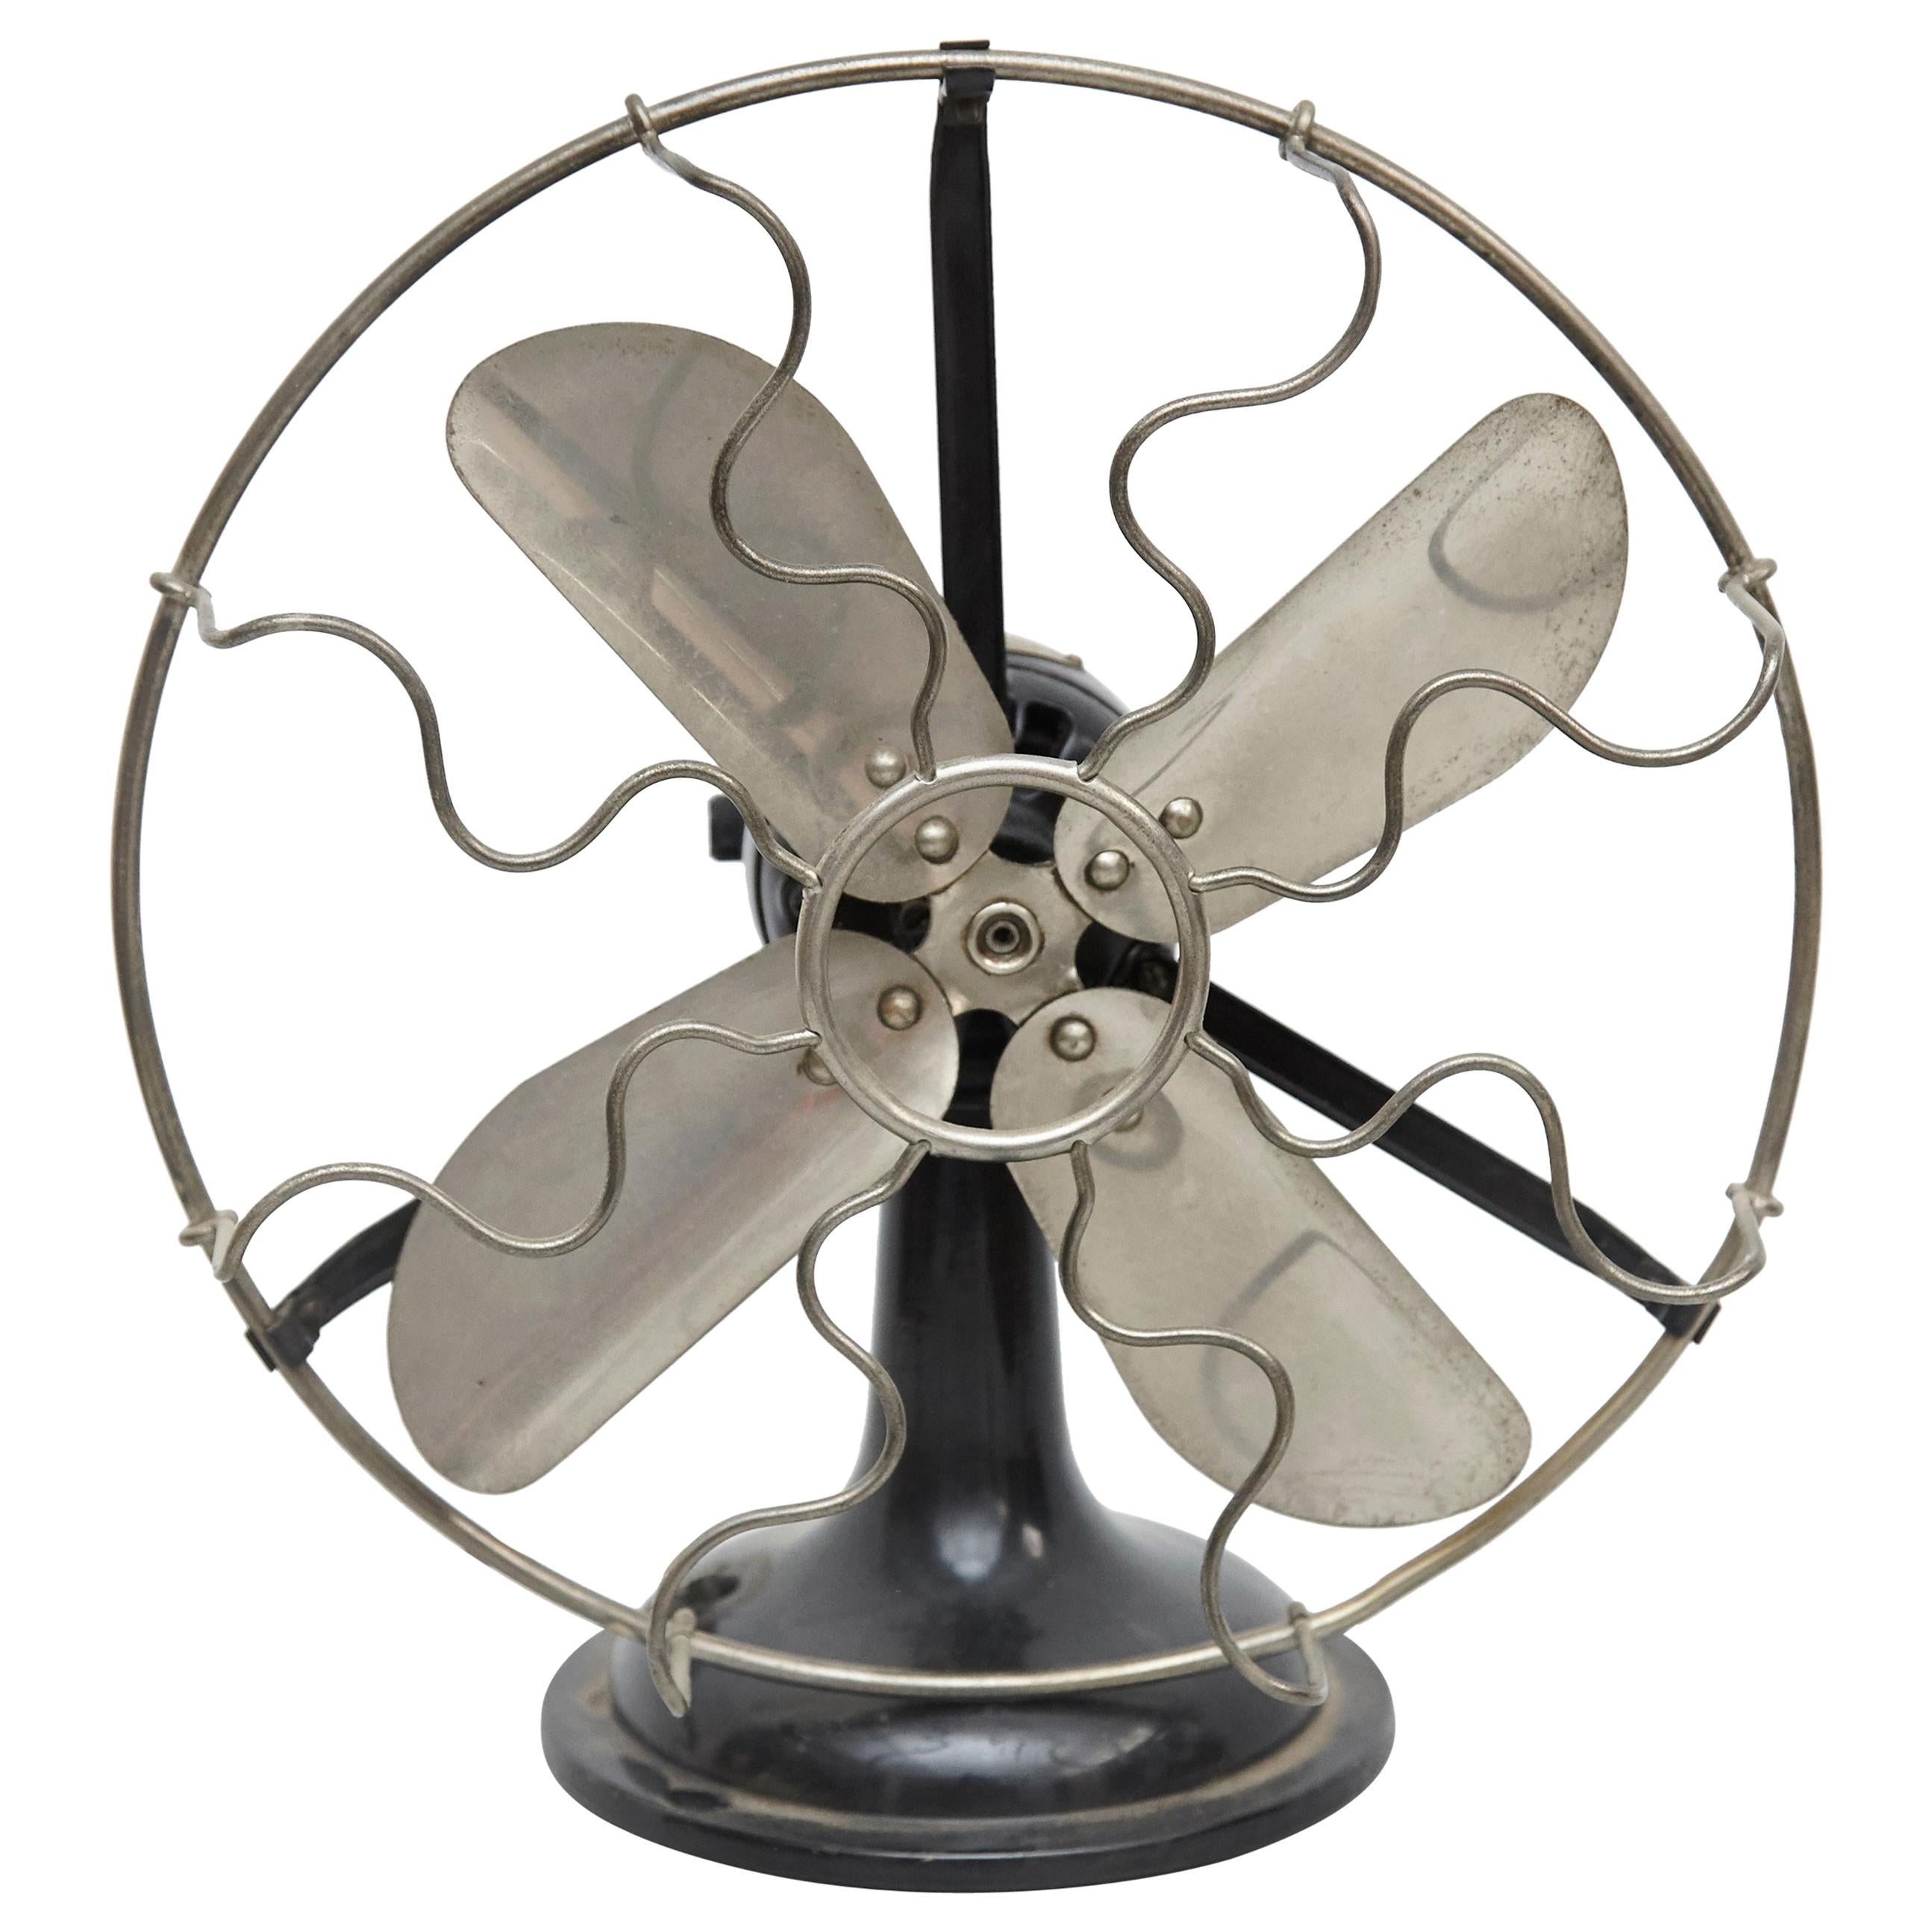 Marelli Fan, circa 1940